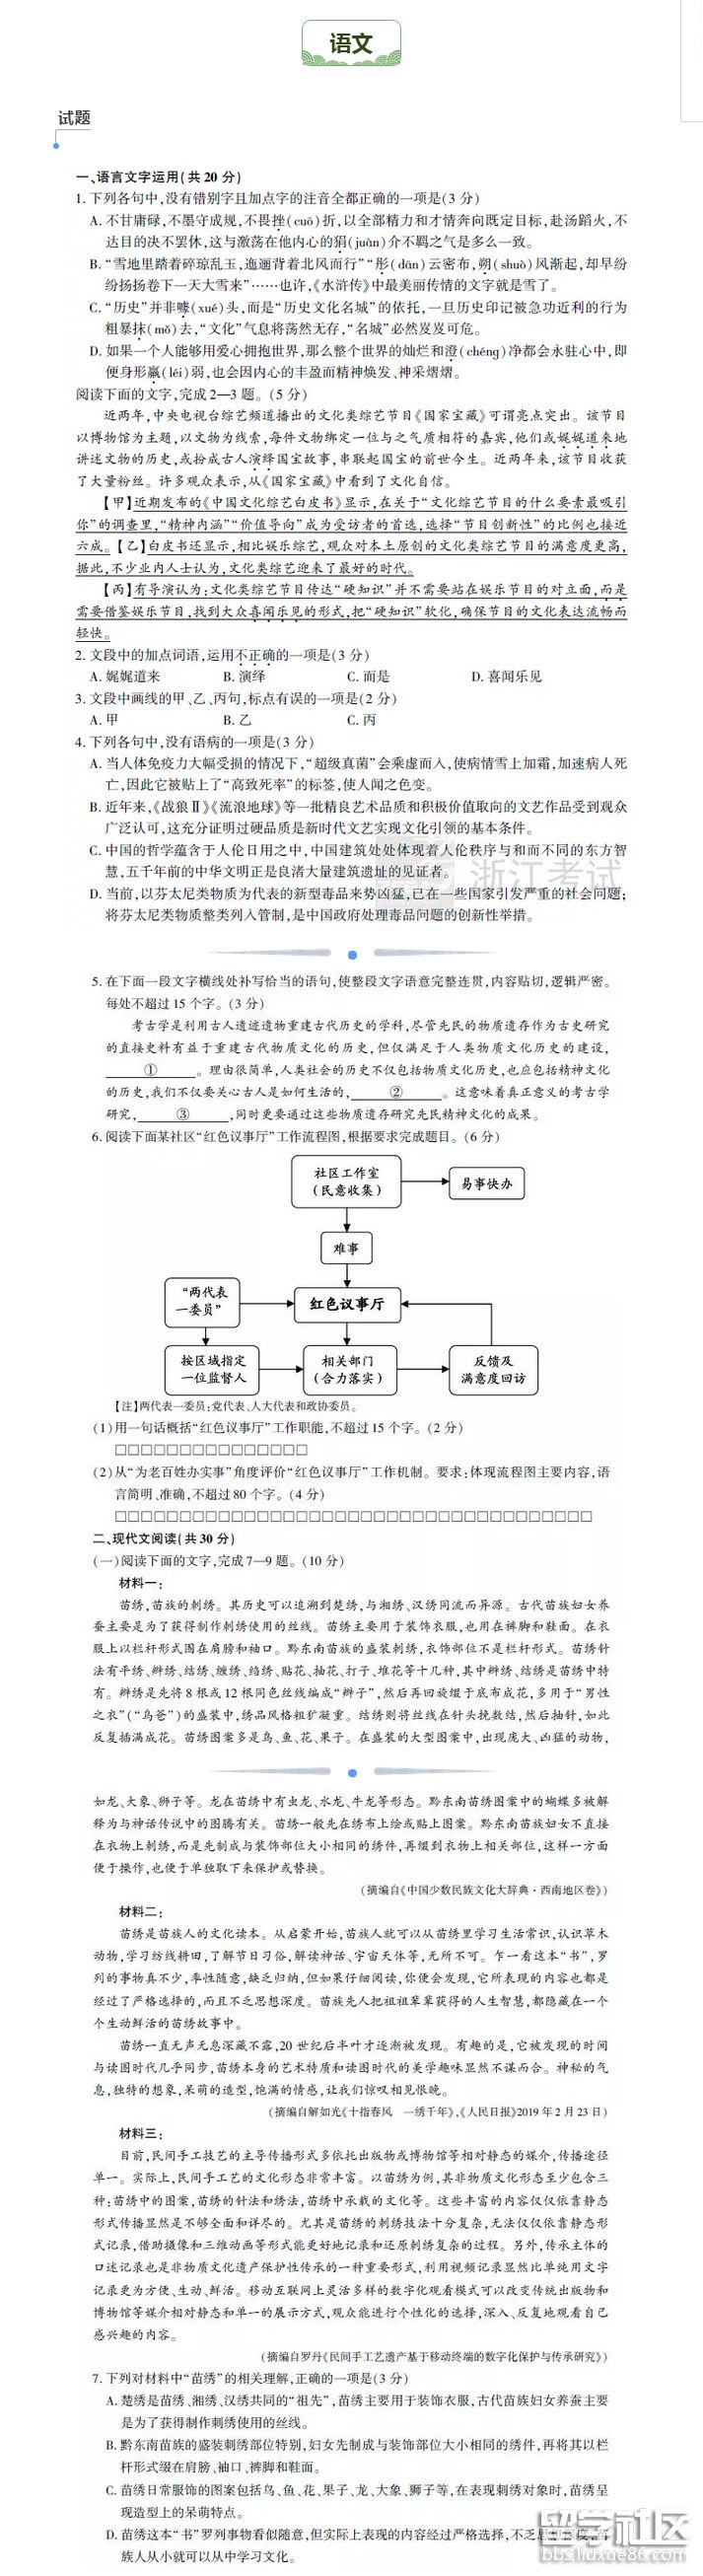 2019年浙江高考中文試題和答案已公布